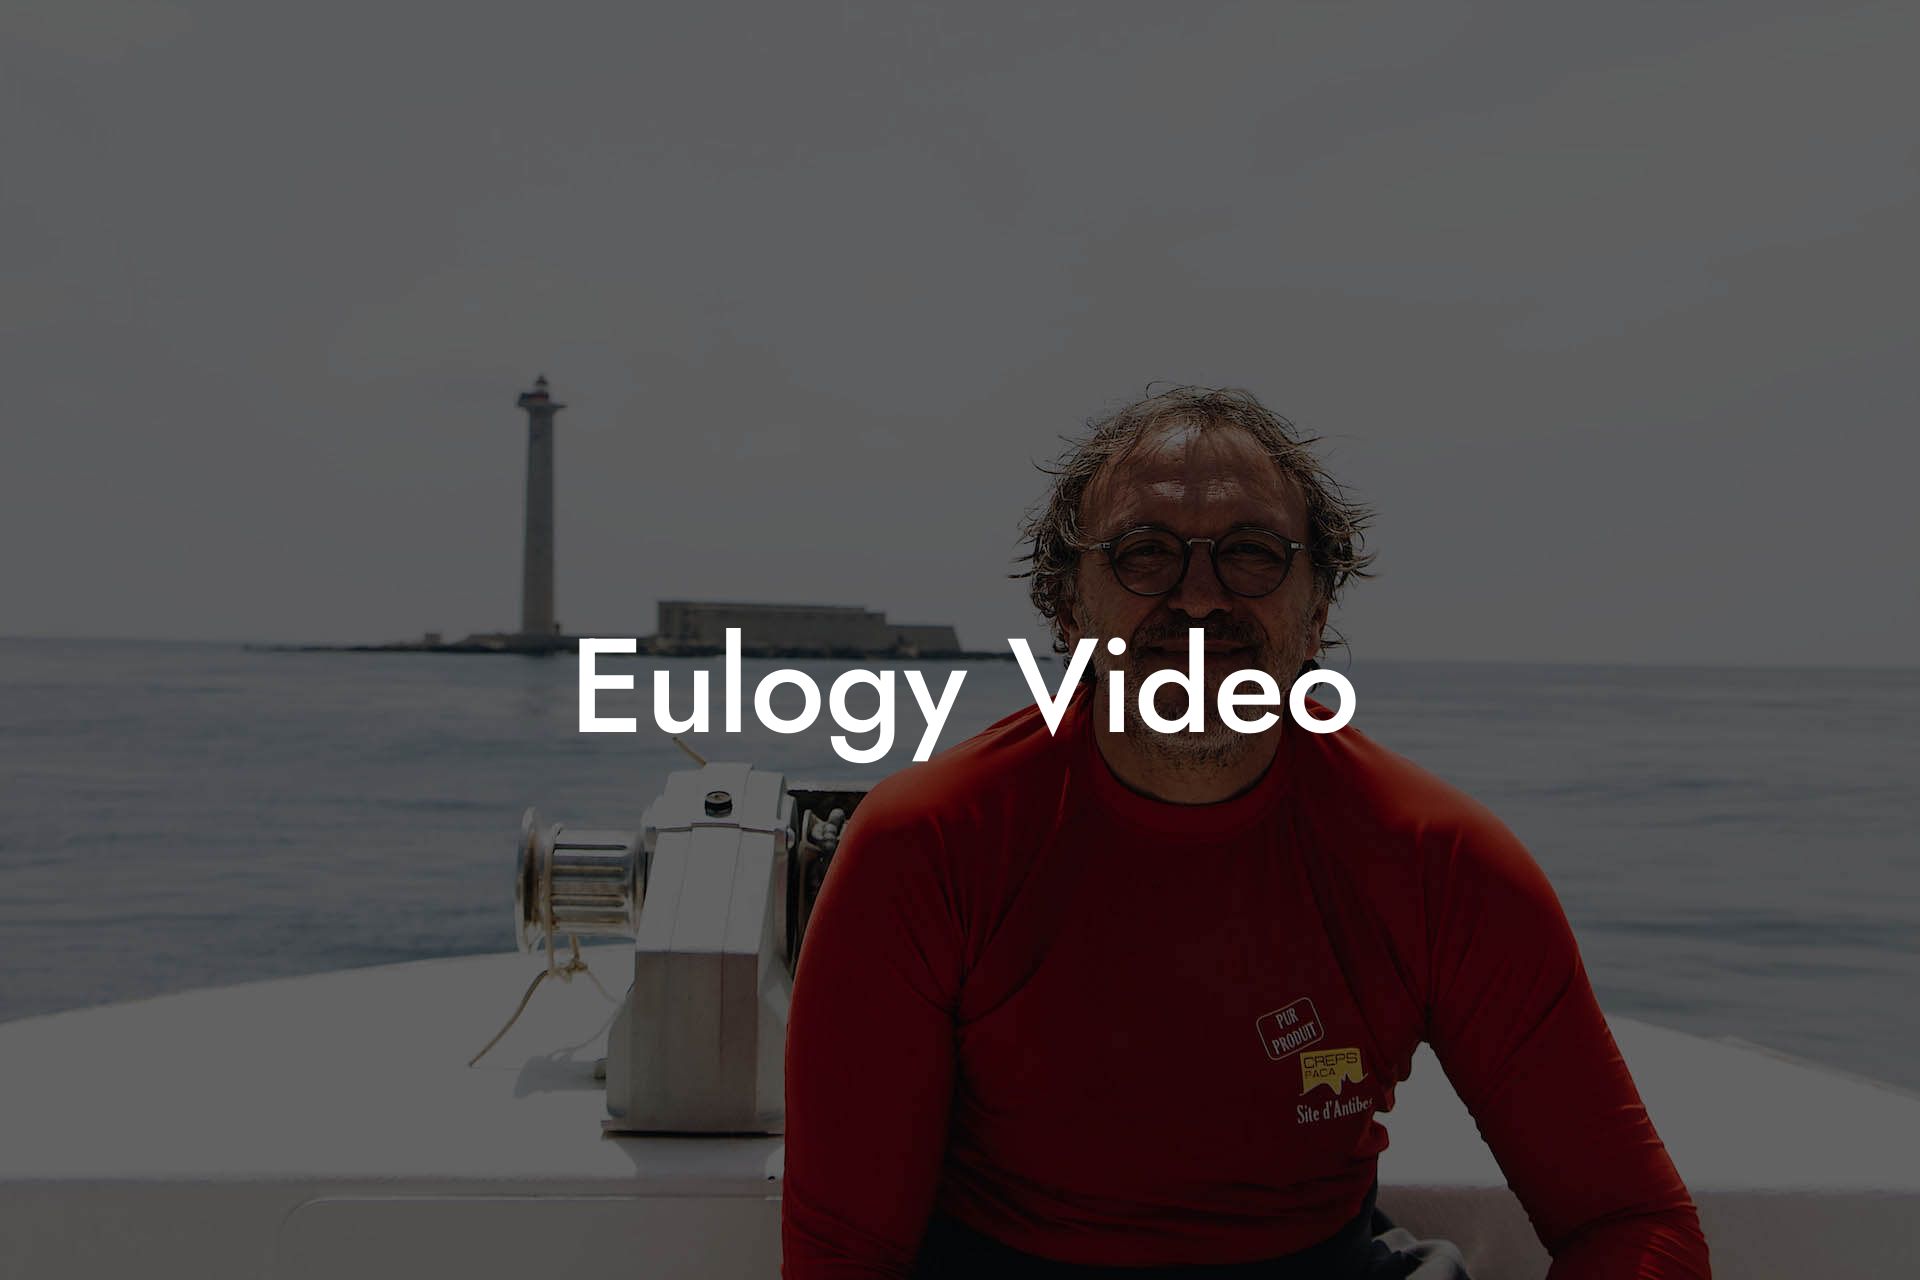 Eulogy Video